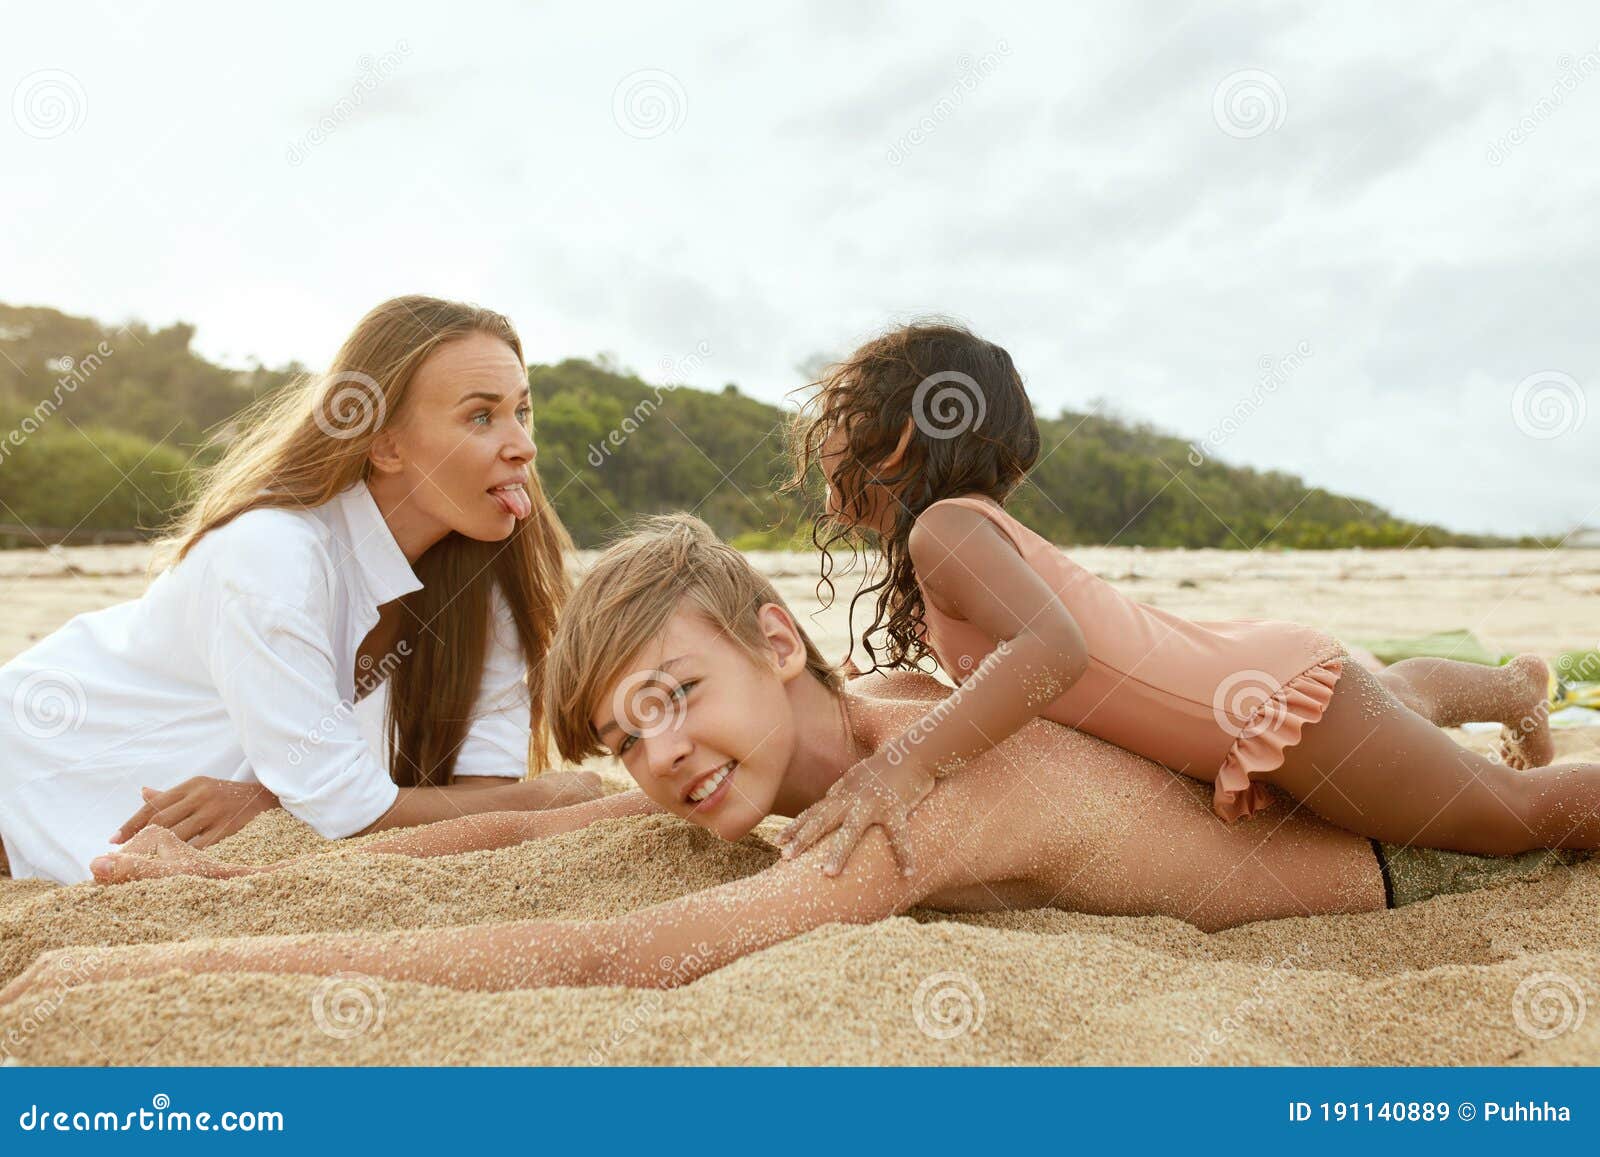 Family beach nudist 